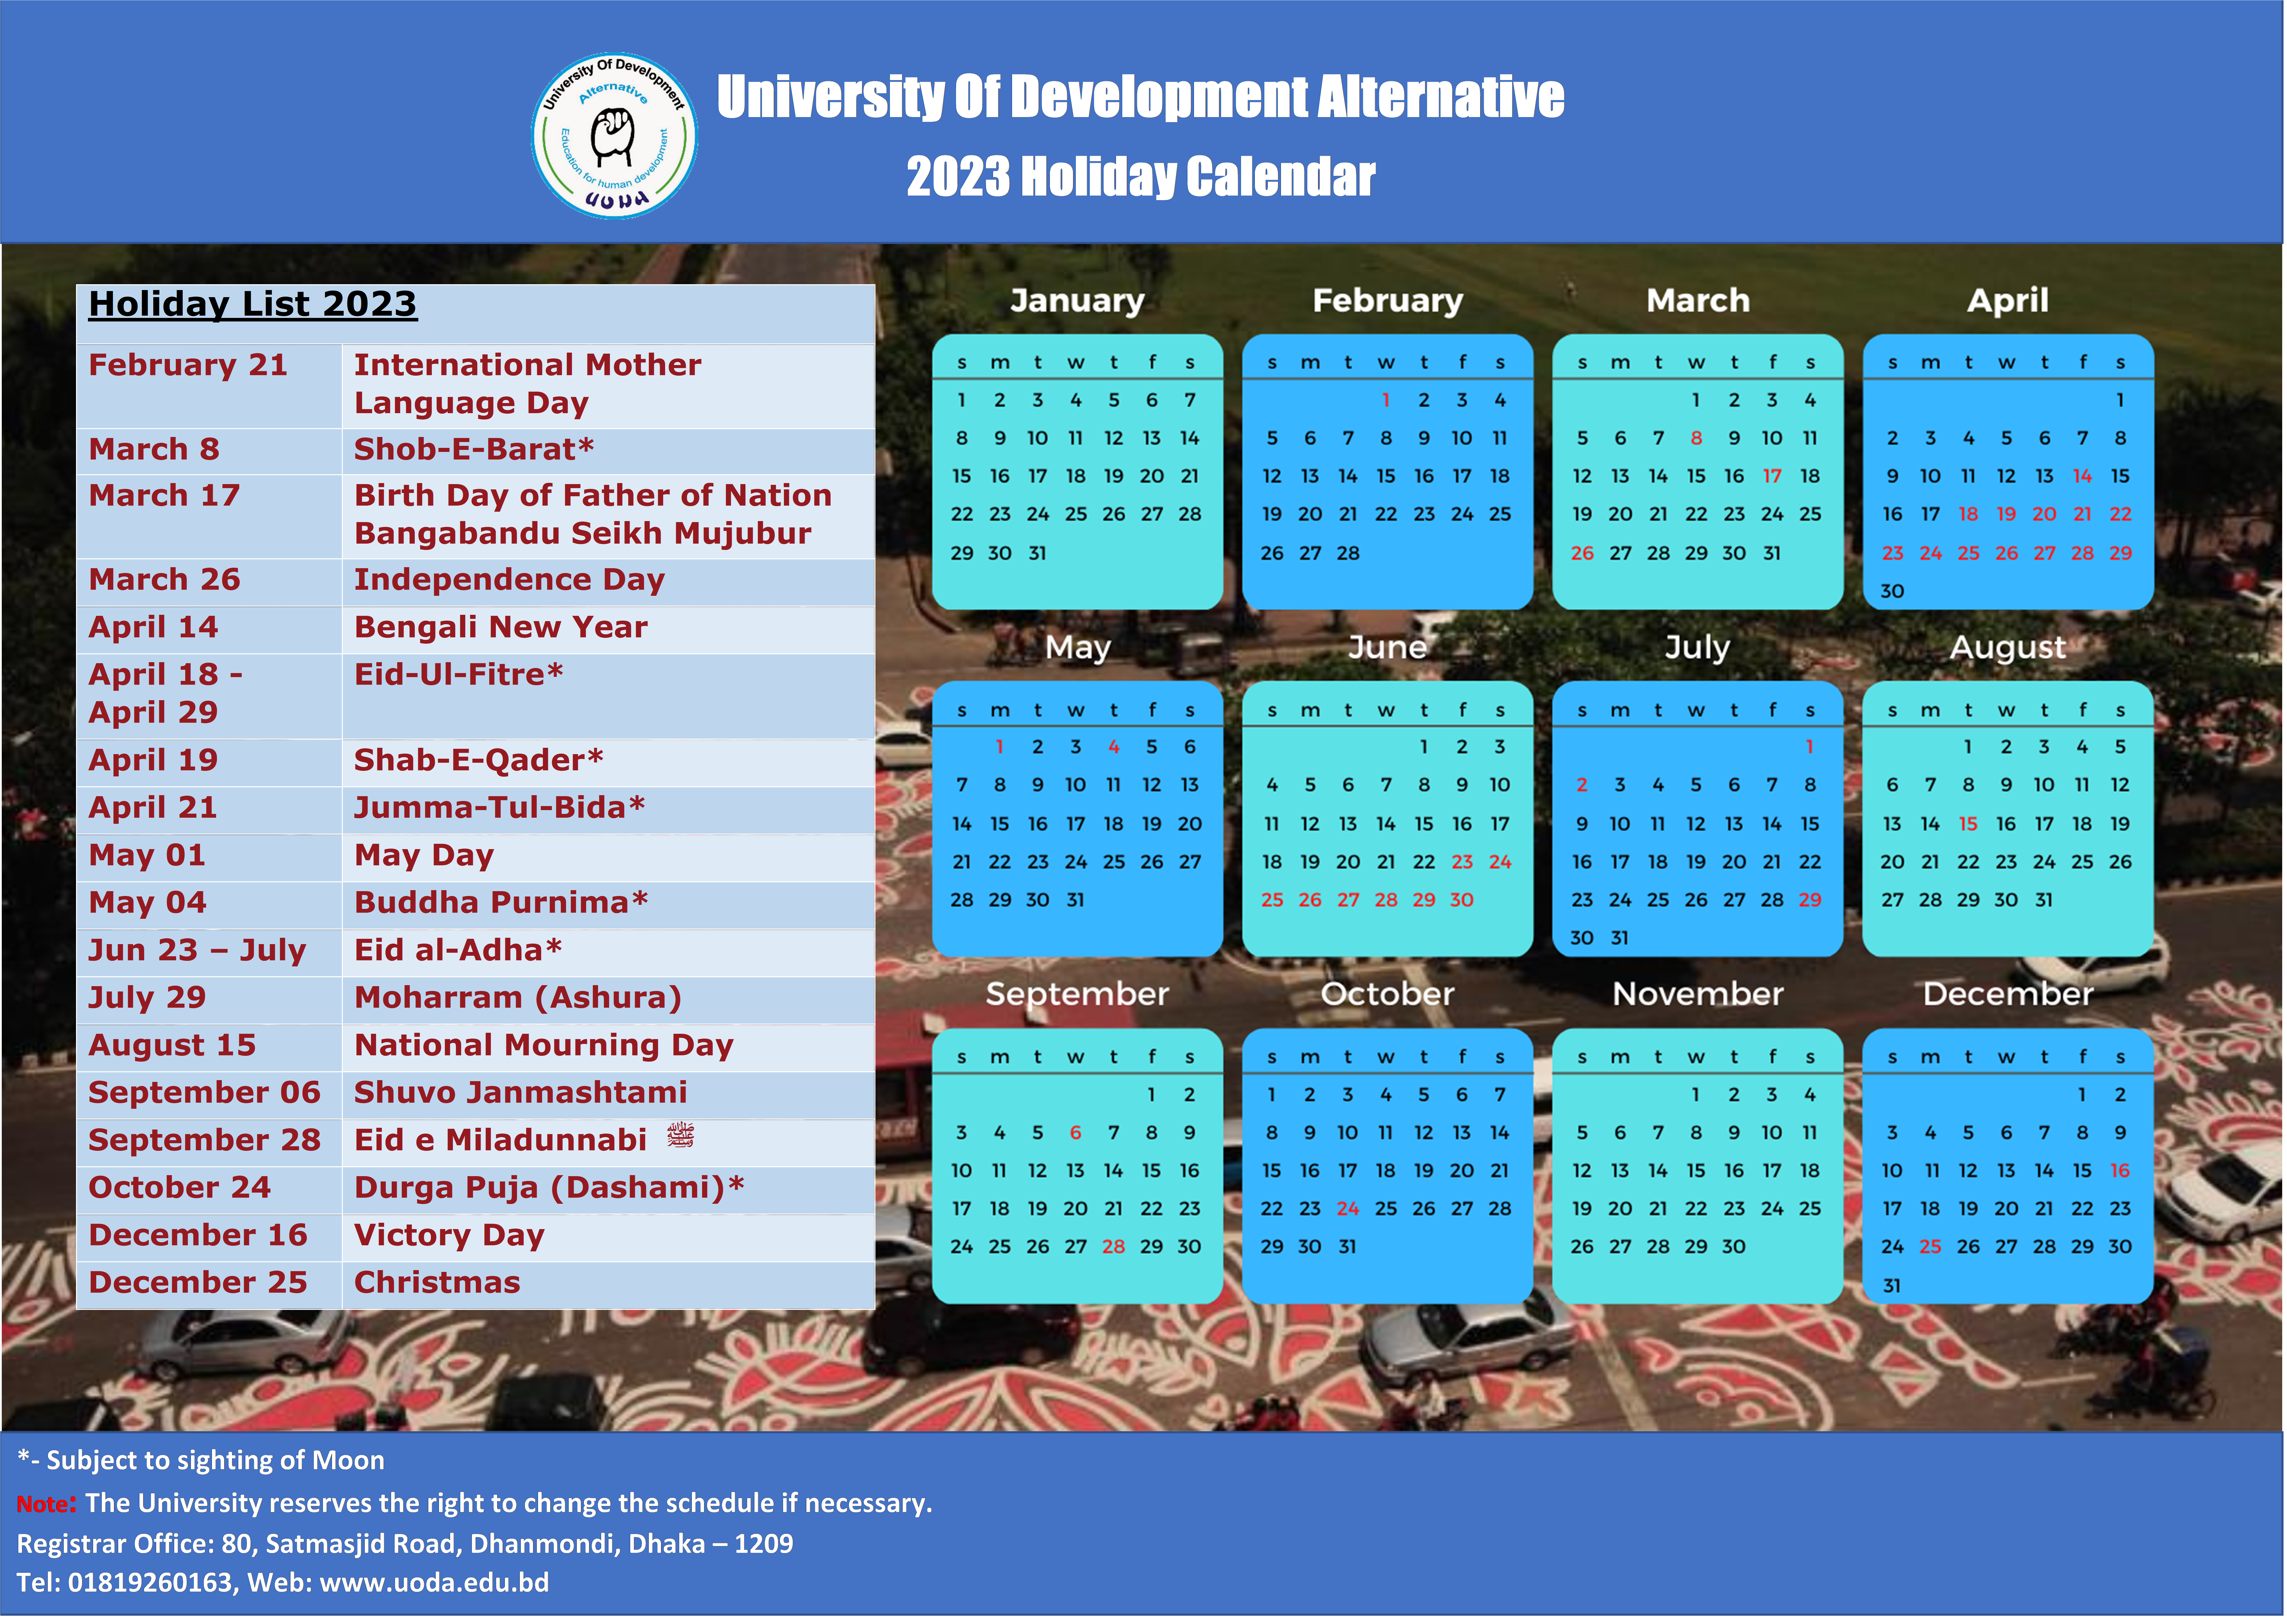 Academic Calendar for 2023